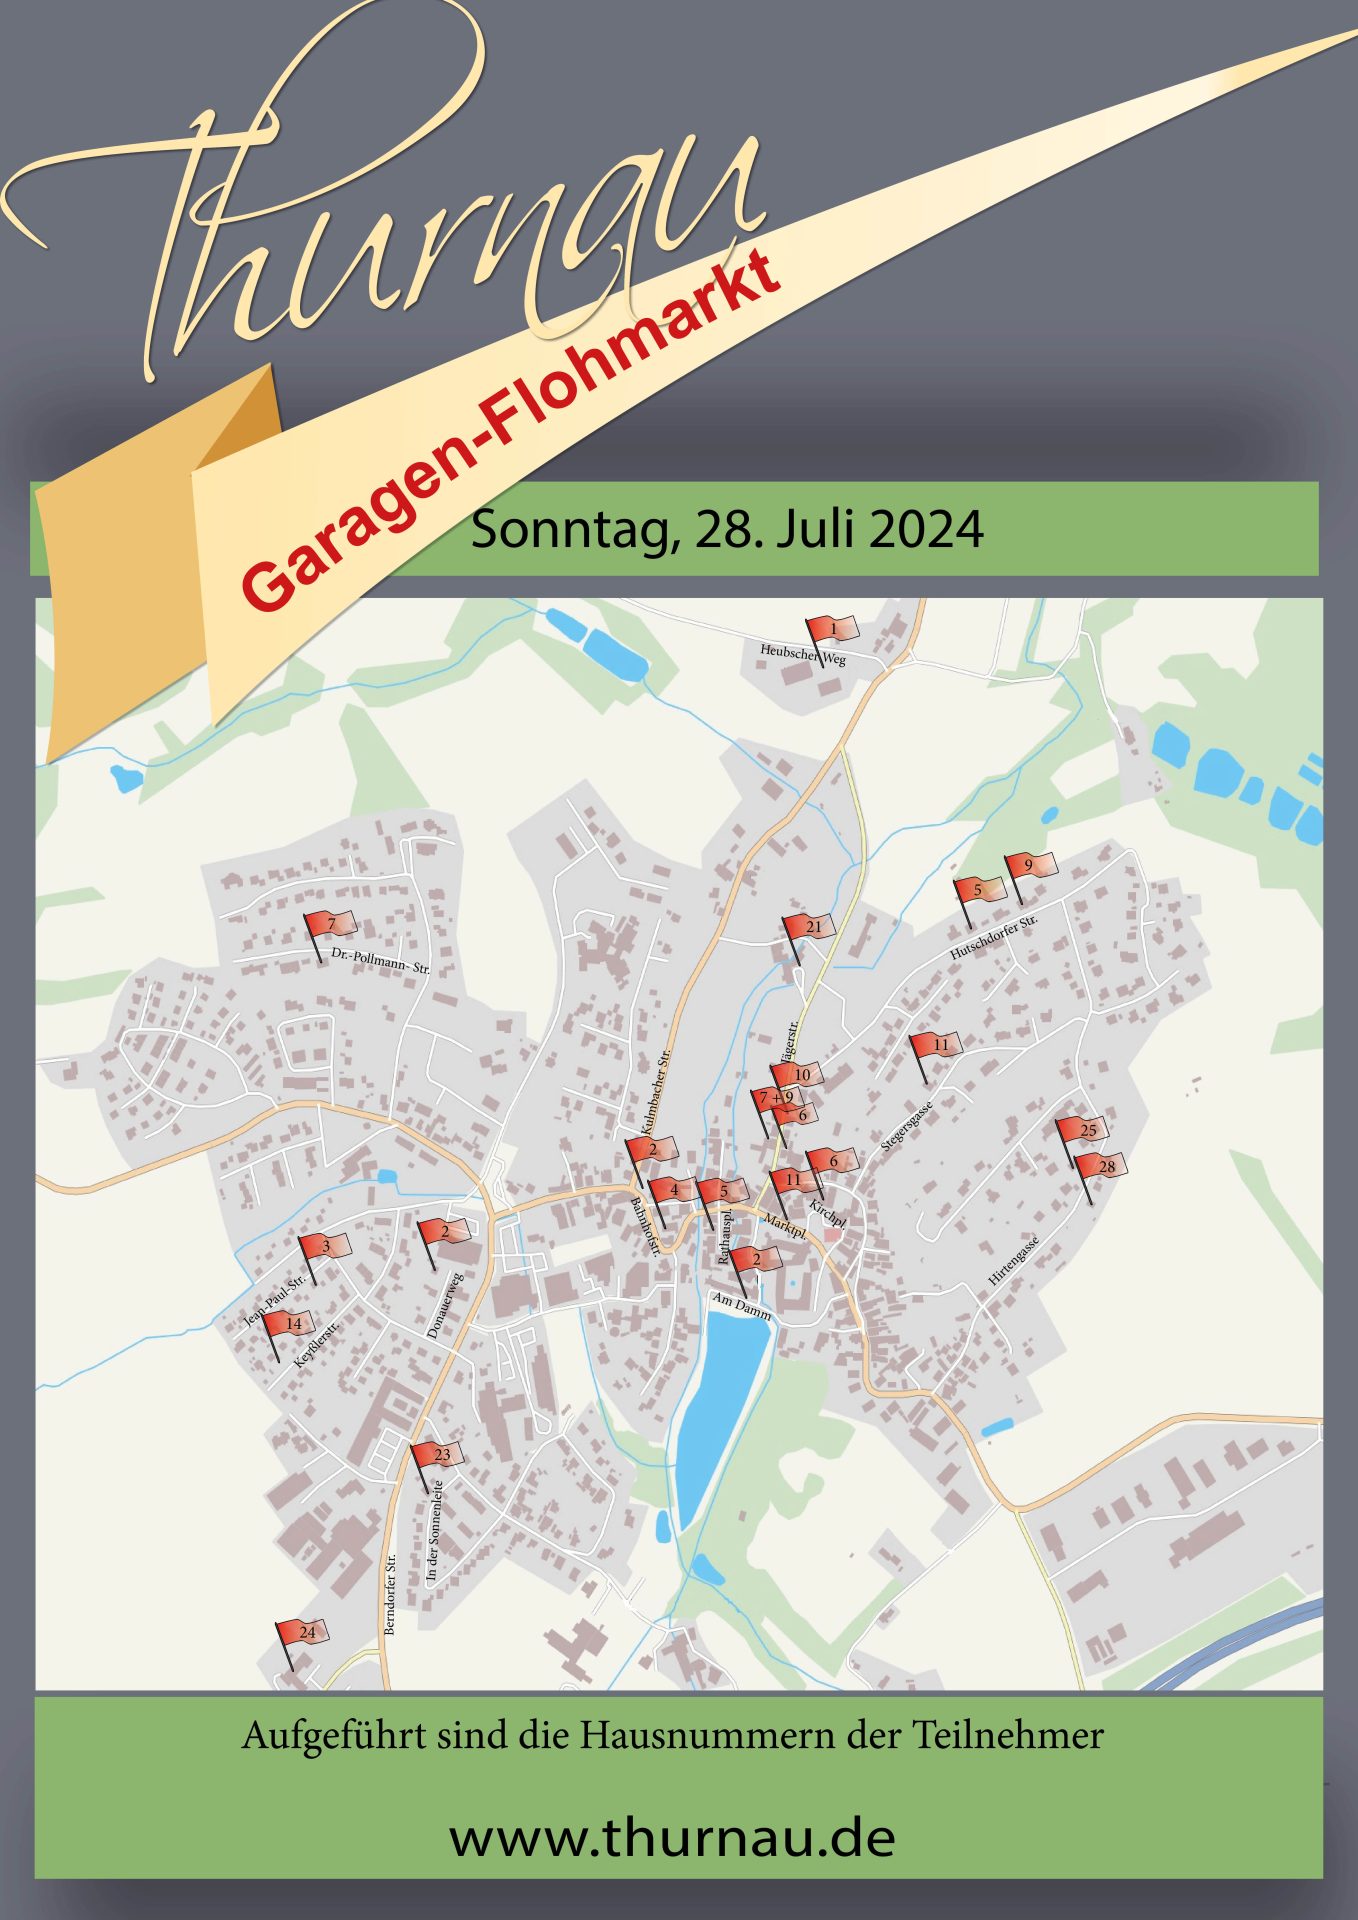 Garagenflohmarkt zur Sommerkirchweih am 28. Juli 2024